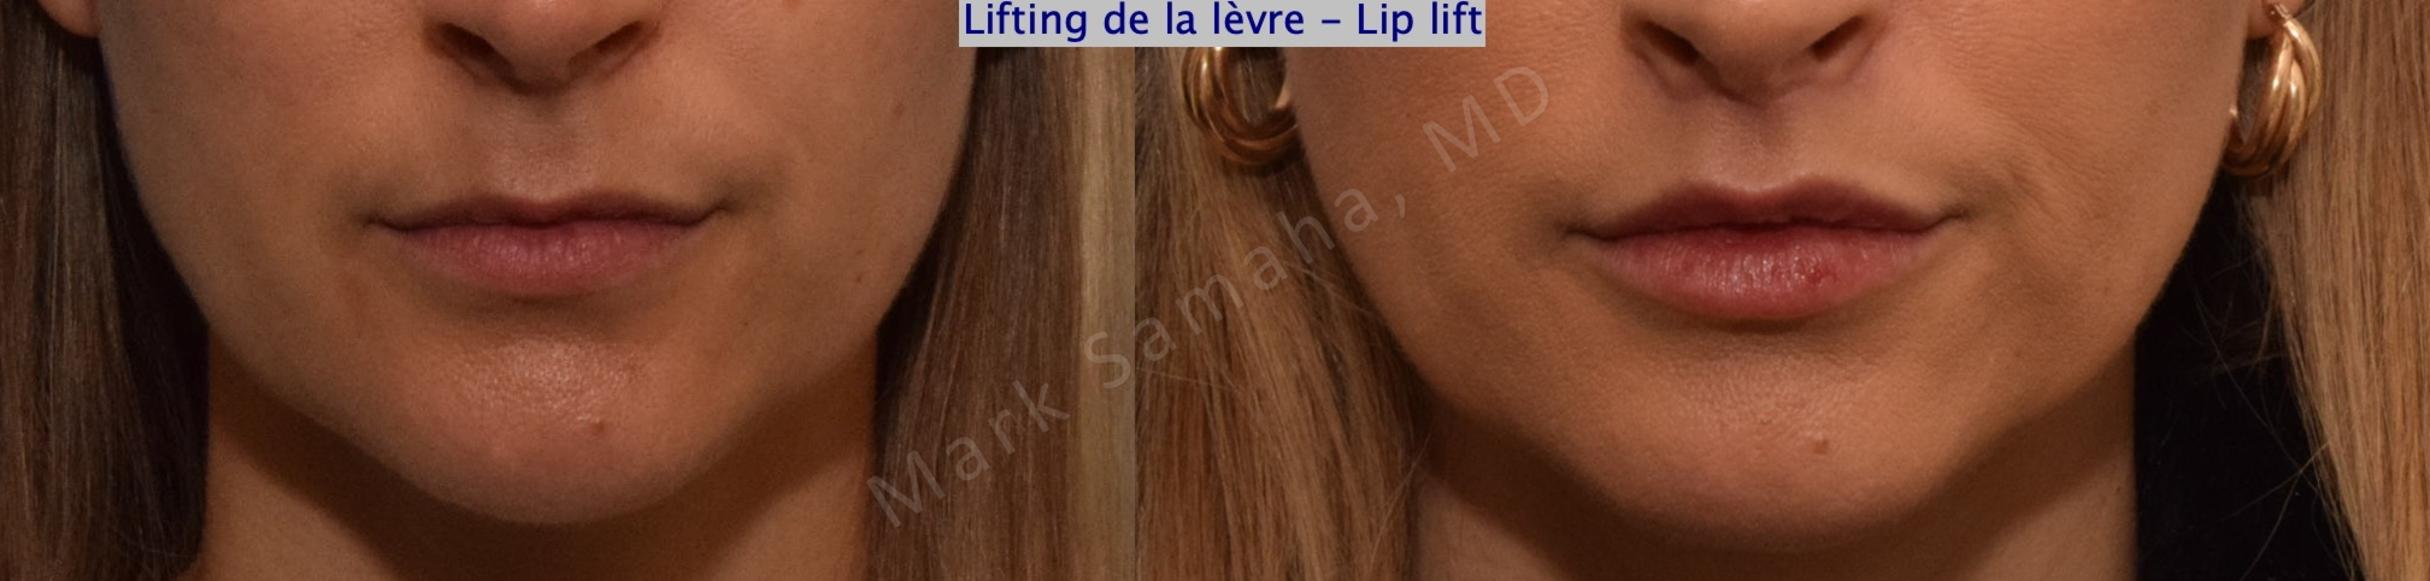 Before & After Lip Lift / Lifting de la lèvre supérieure Case 199 Front View in Mount Royal, QC